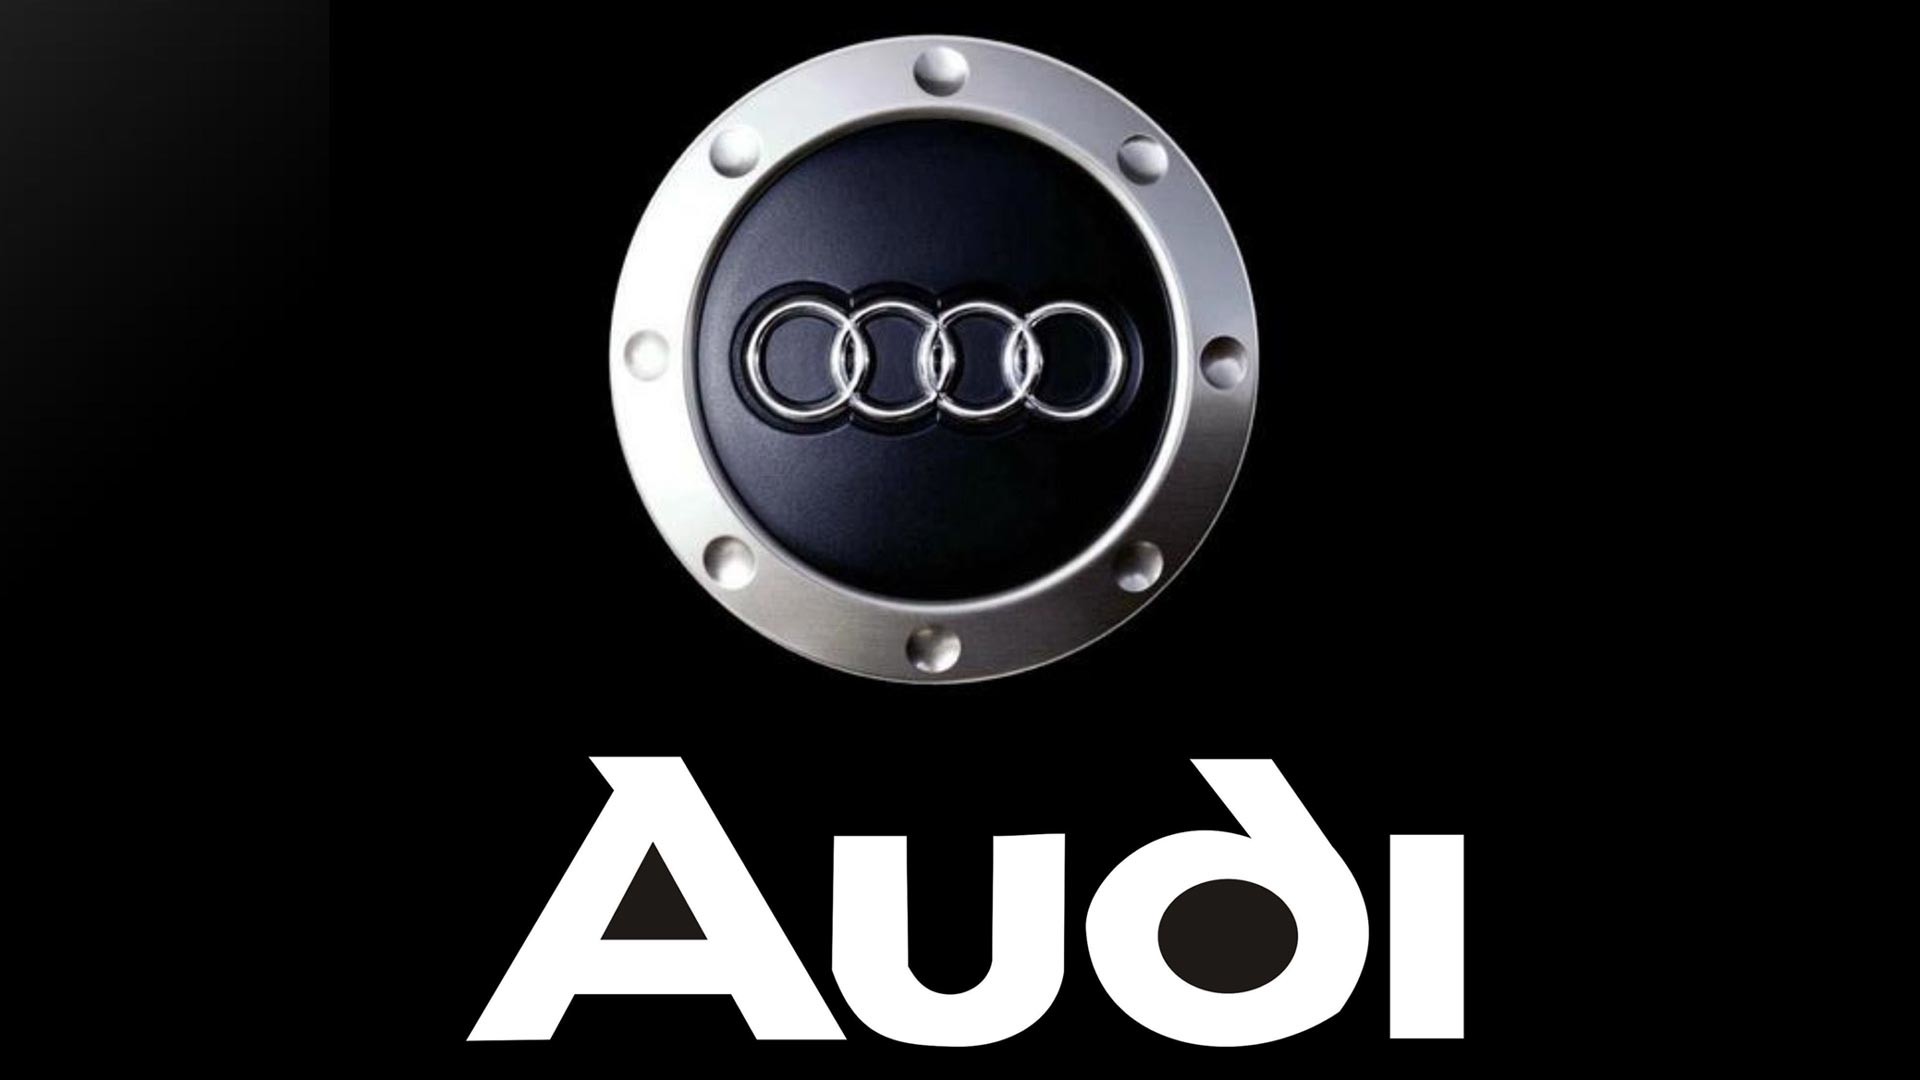 1920x1080 Audi Logo Full HD Wallpaper 